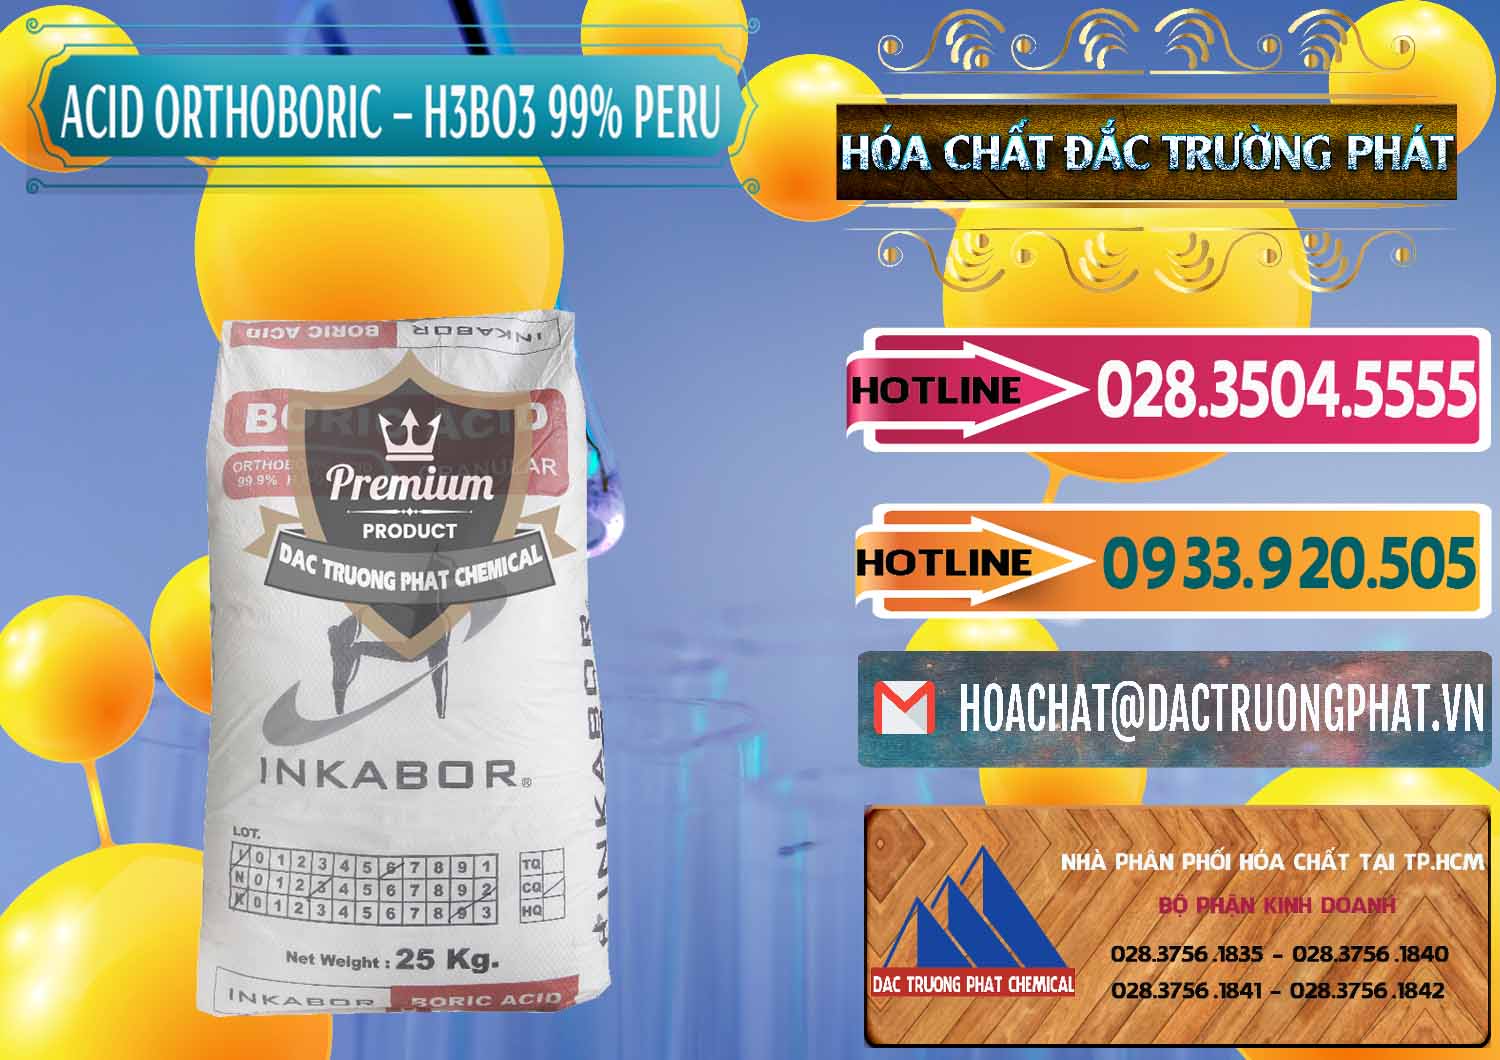 Bán và cung cấp Acid Boric – Axit Boric H3BO3 99% Inkabor Peru - 0280 - Công ty cung cấp và bán hóa chất tại TP.HCM - dactruongphat.vn